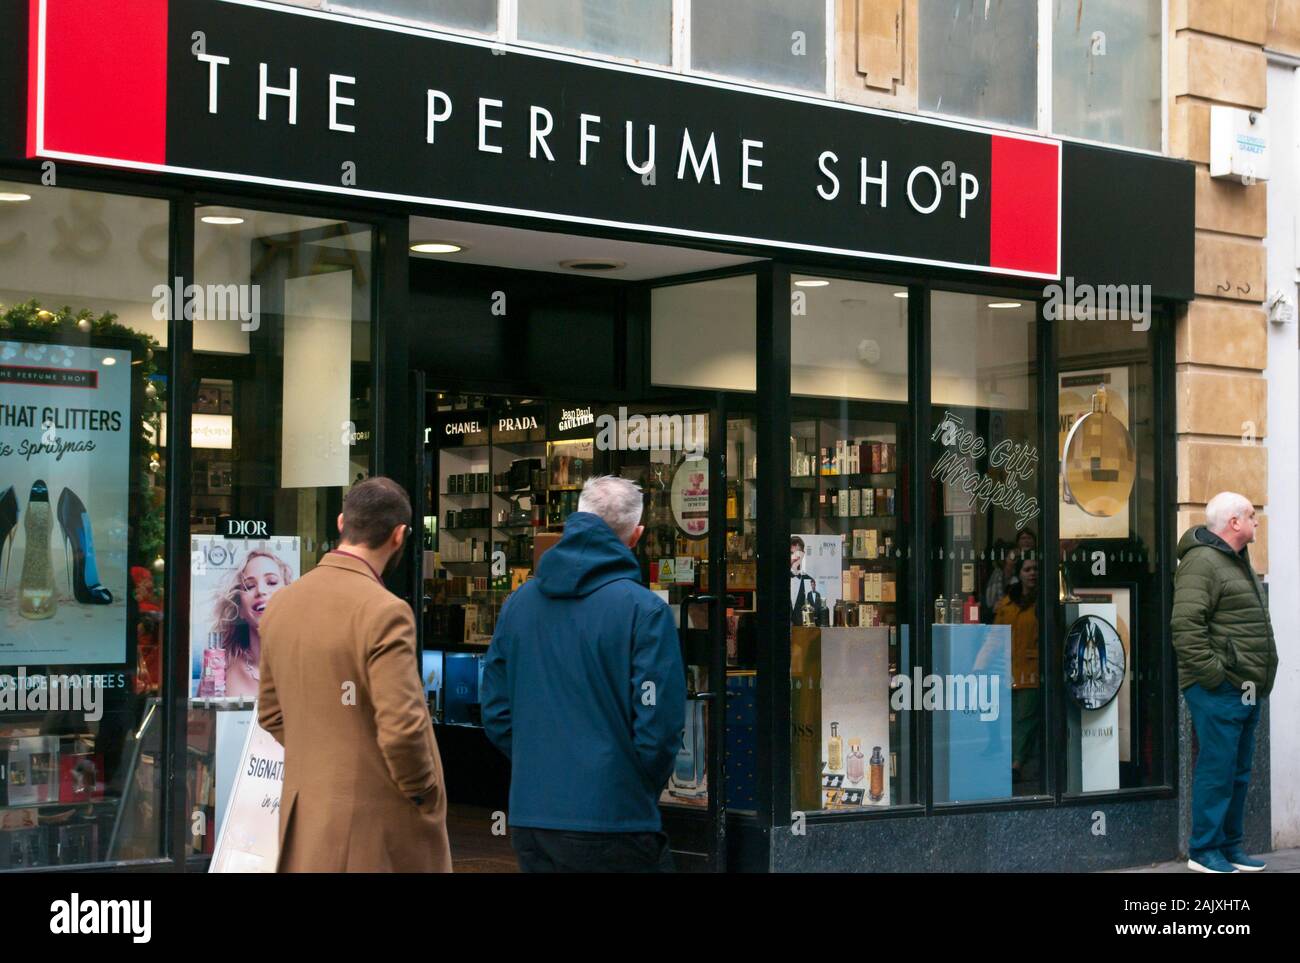 Perfume shop immagini e fotografie stock ad alta risoluzione - Alamy